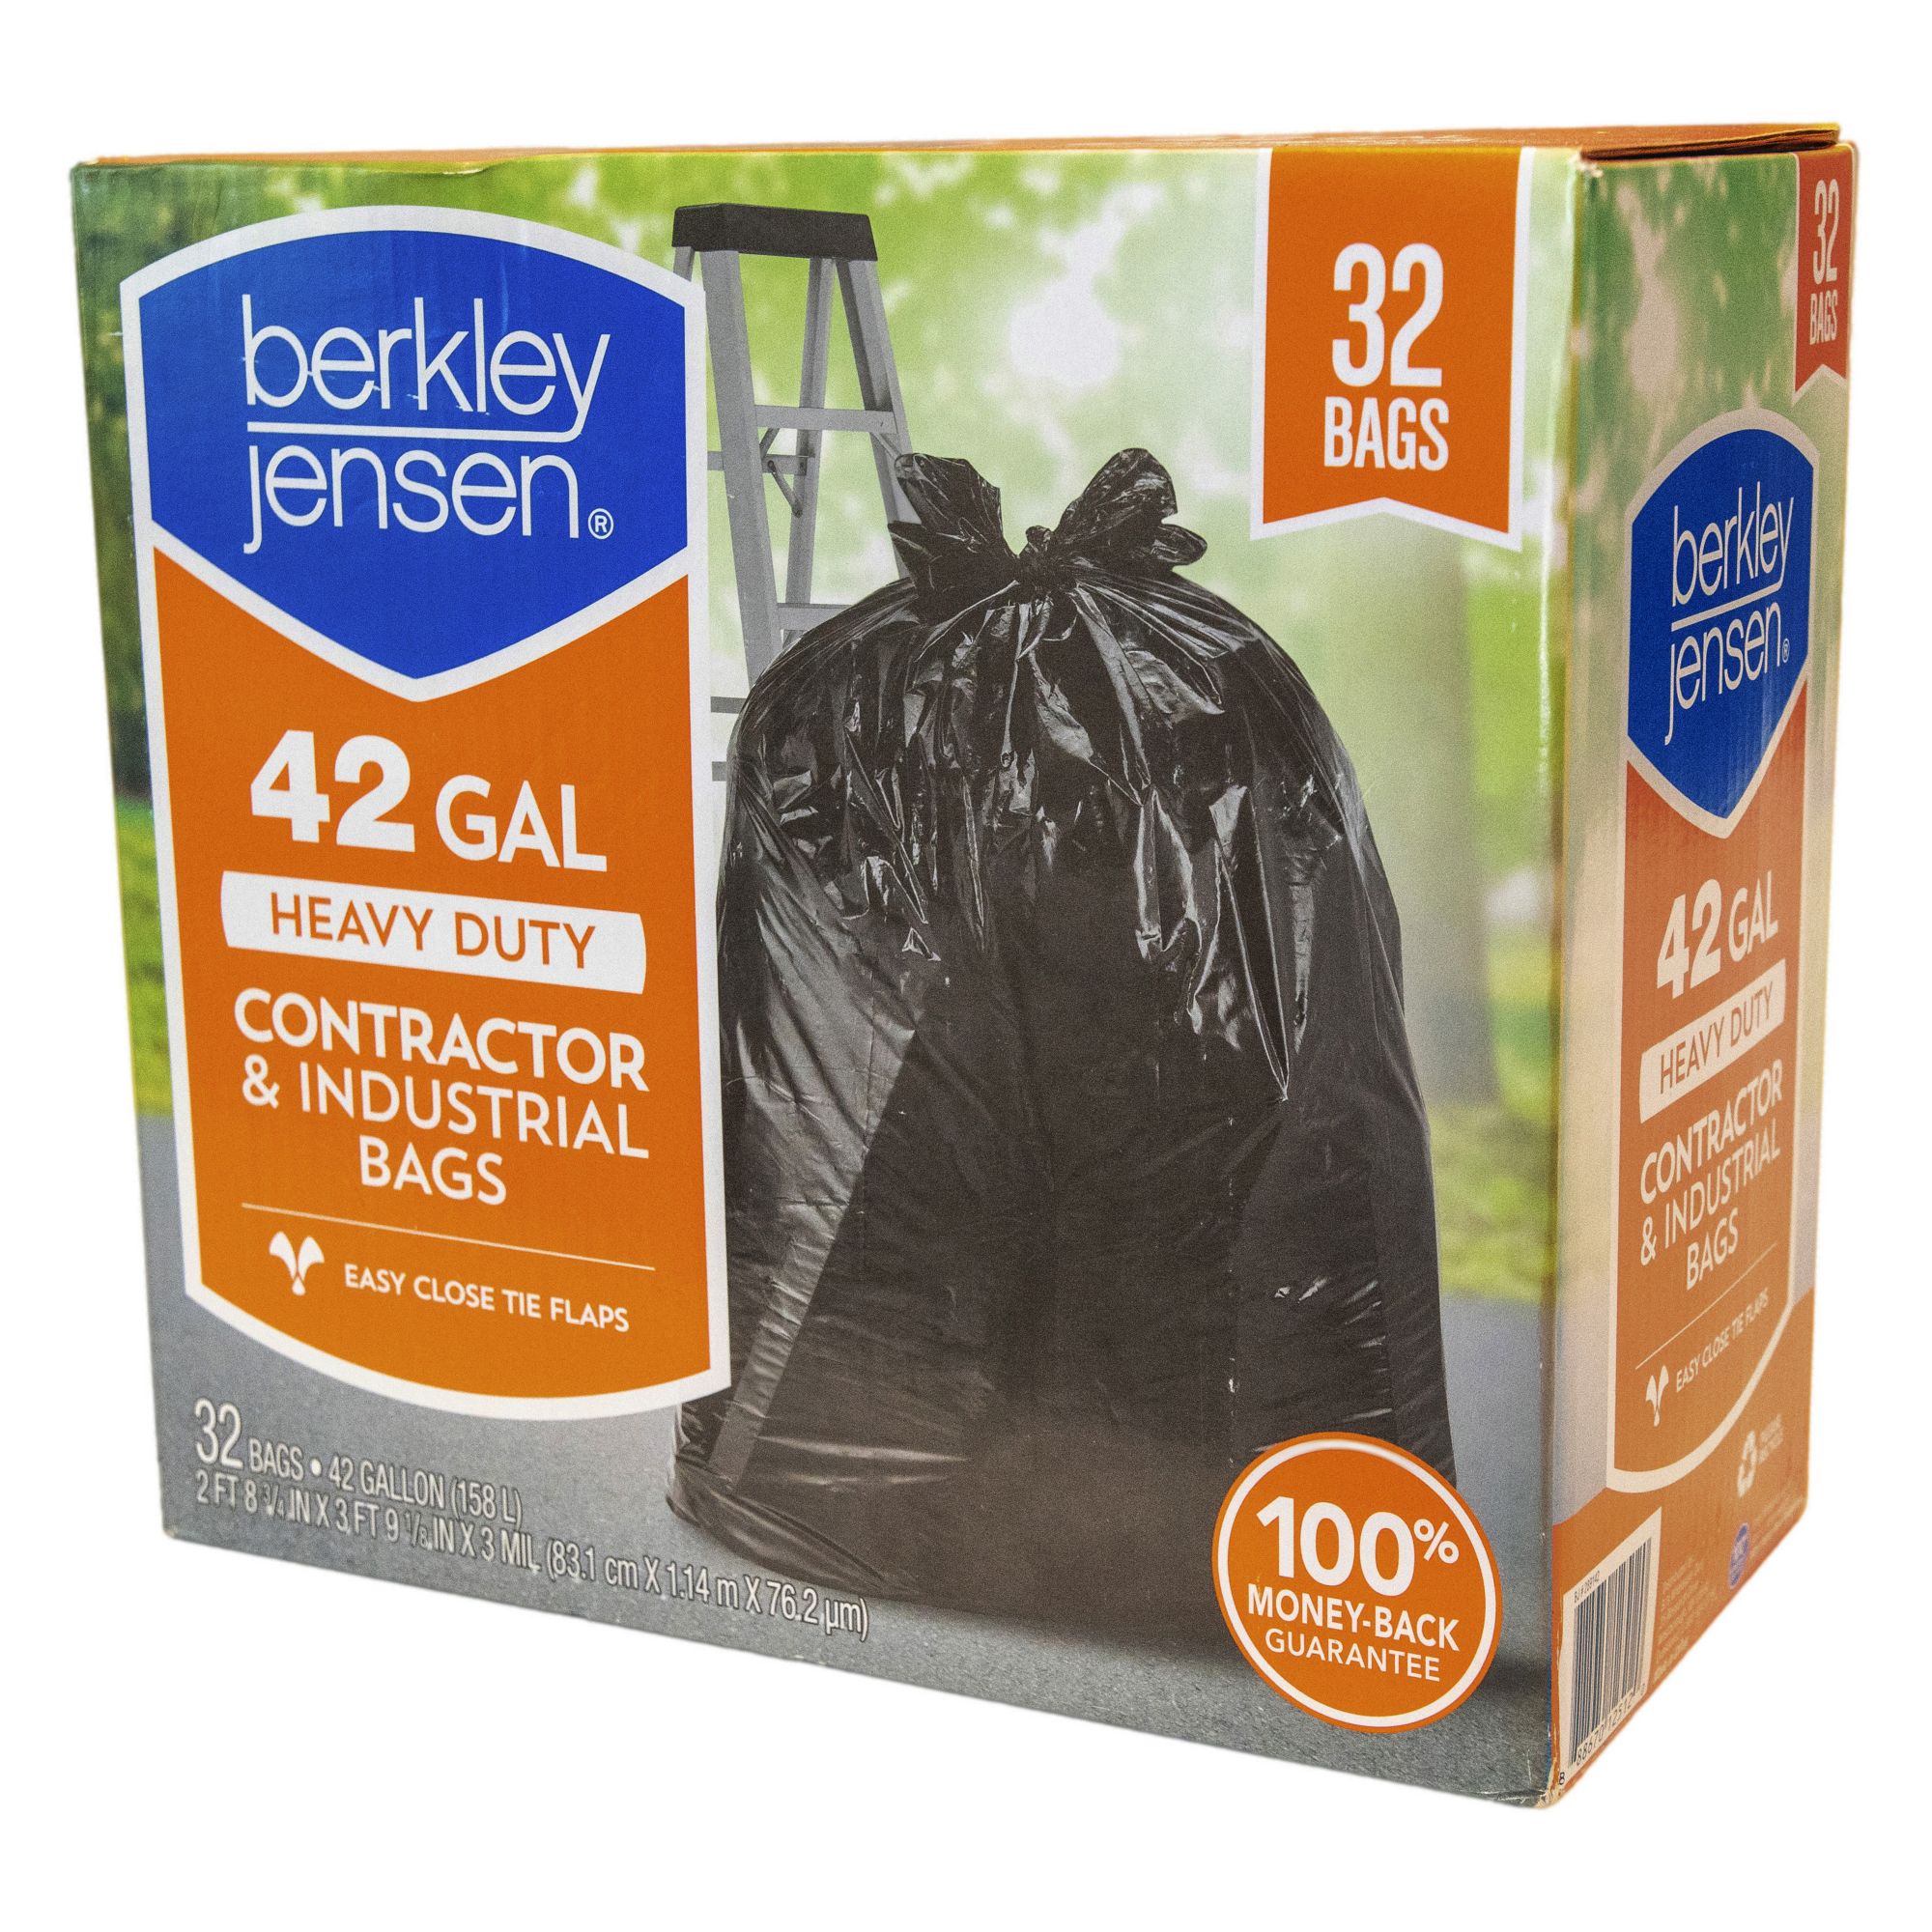 Berkley Jensen Heavy Duty Contractor Bags